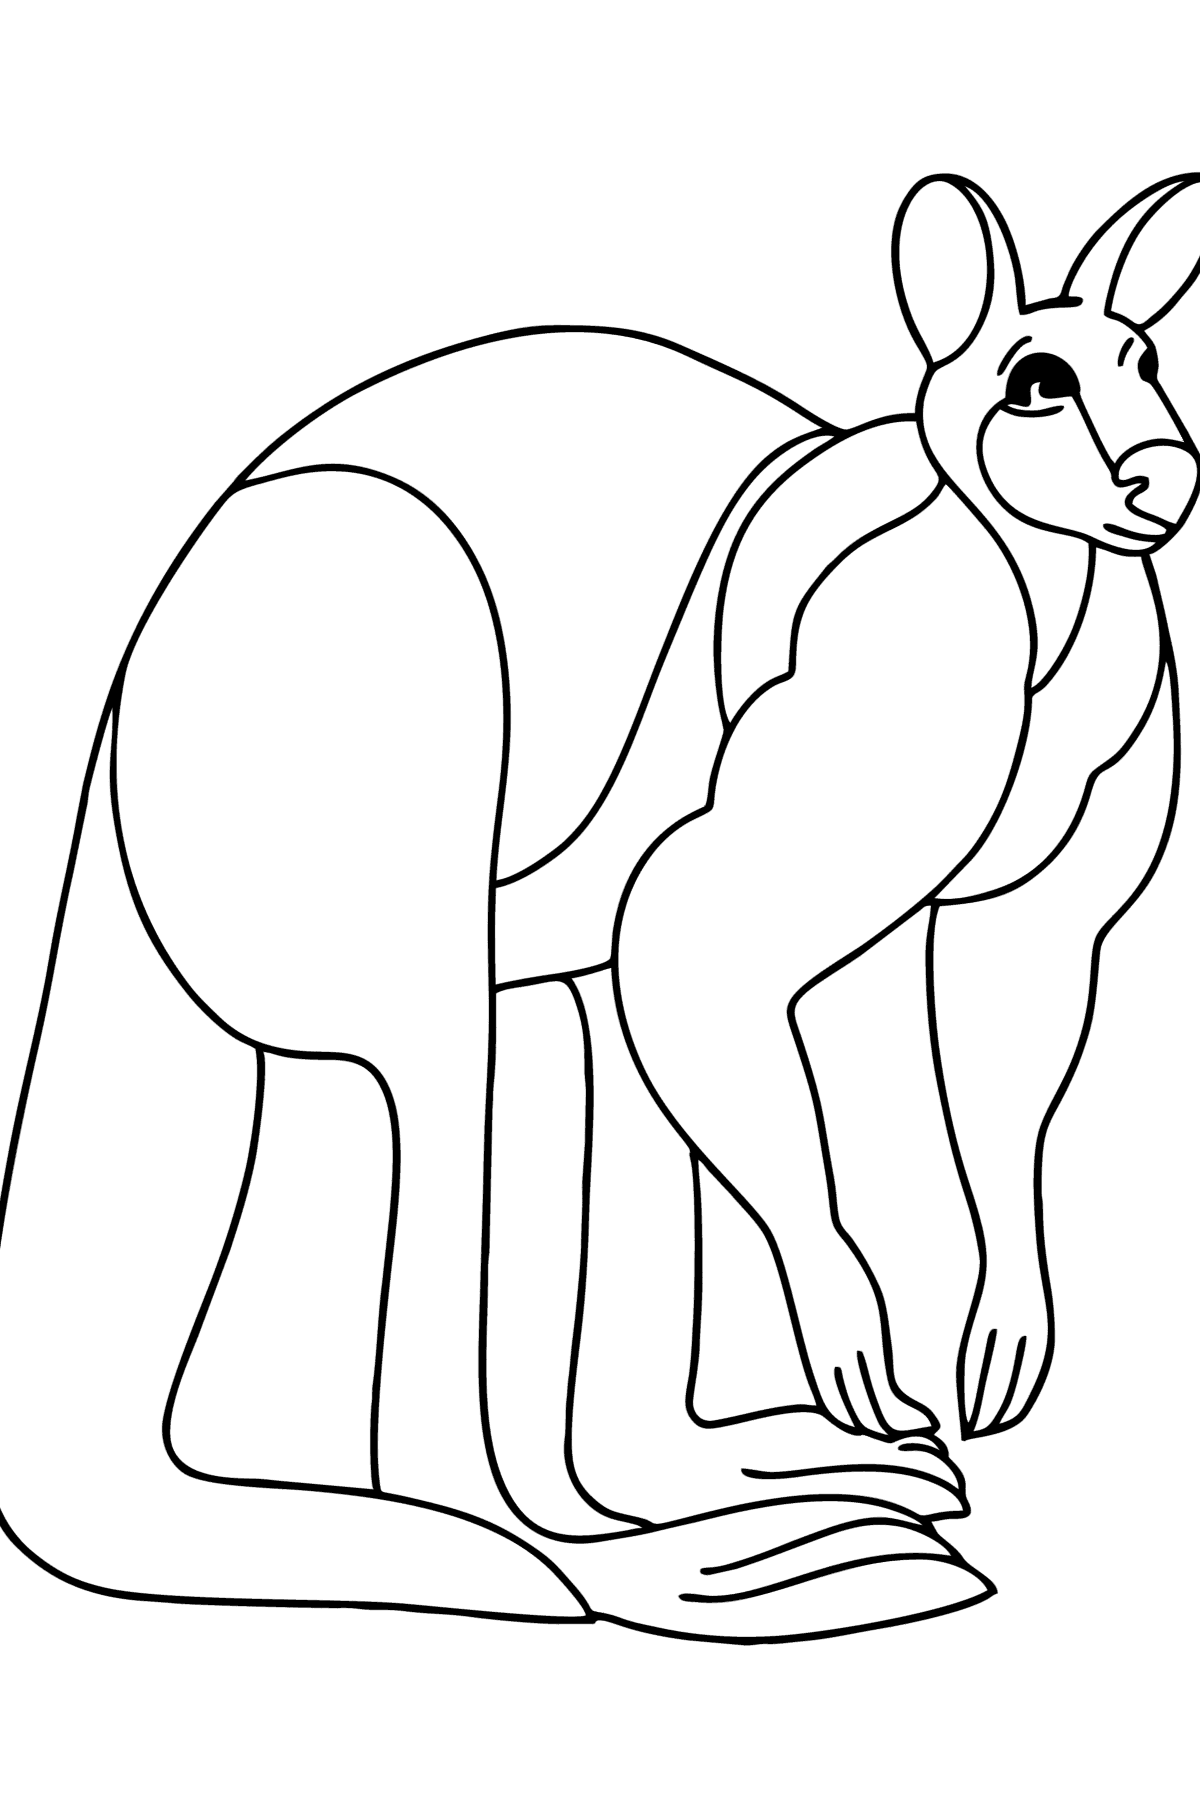 Tegning til fargelegging ingefær kenguru - Tegninger til fargelegging for barn